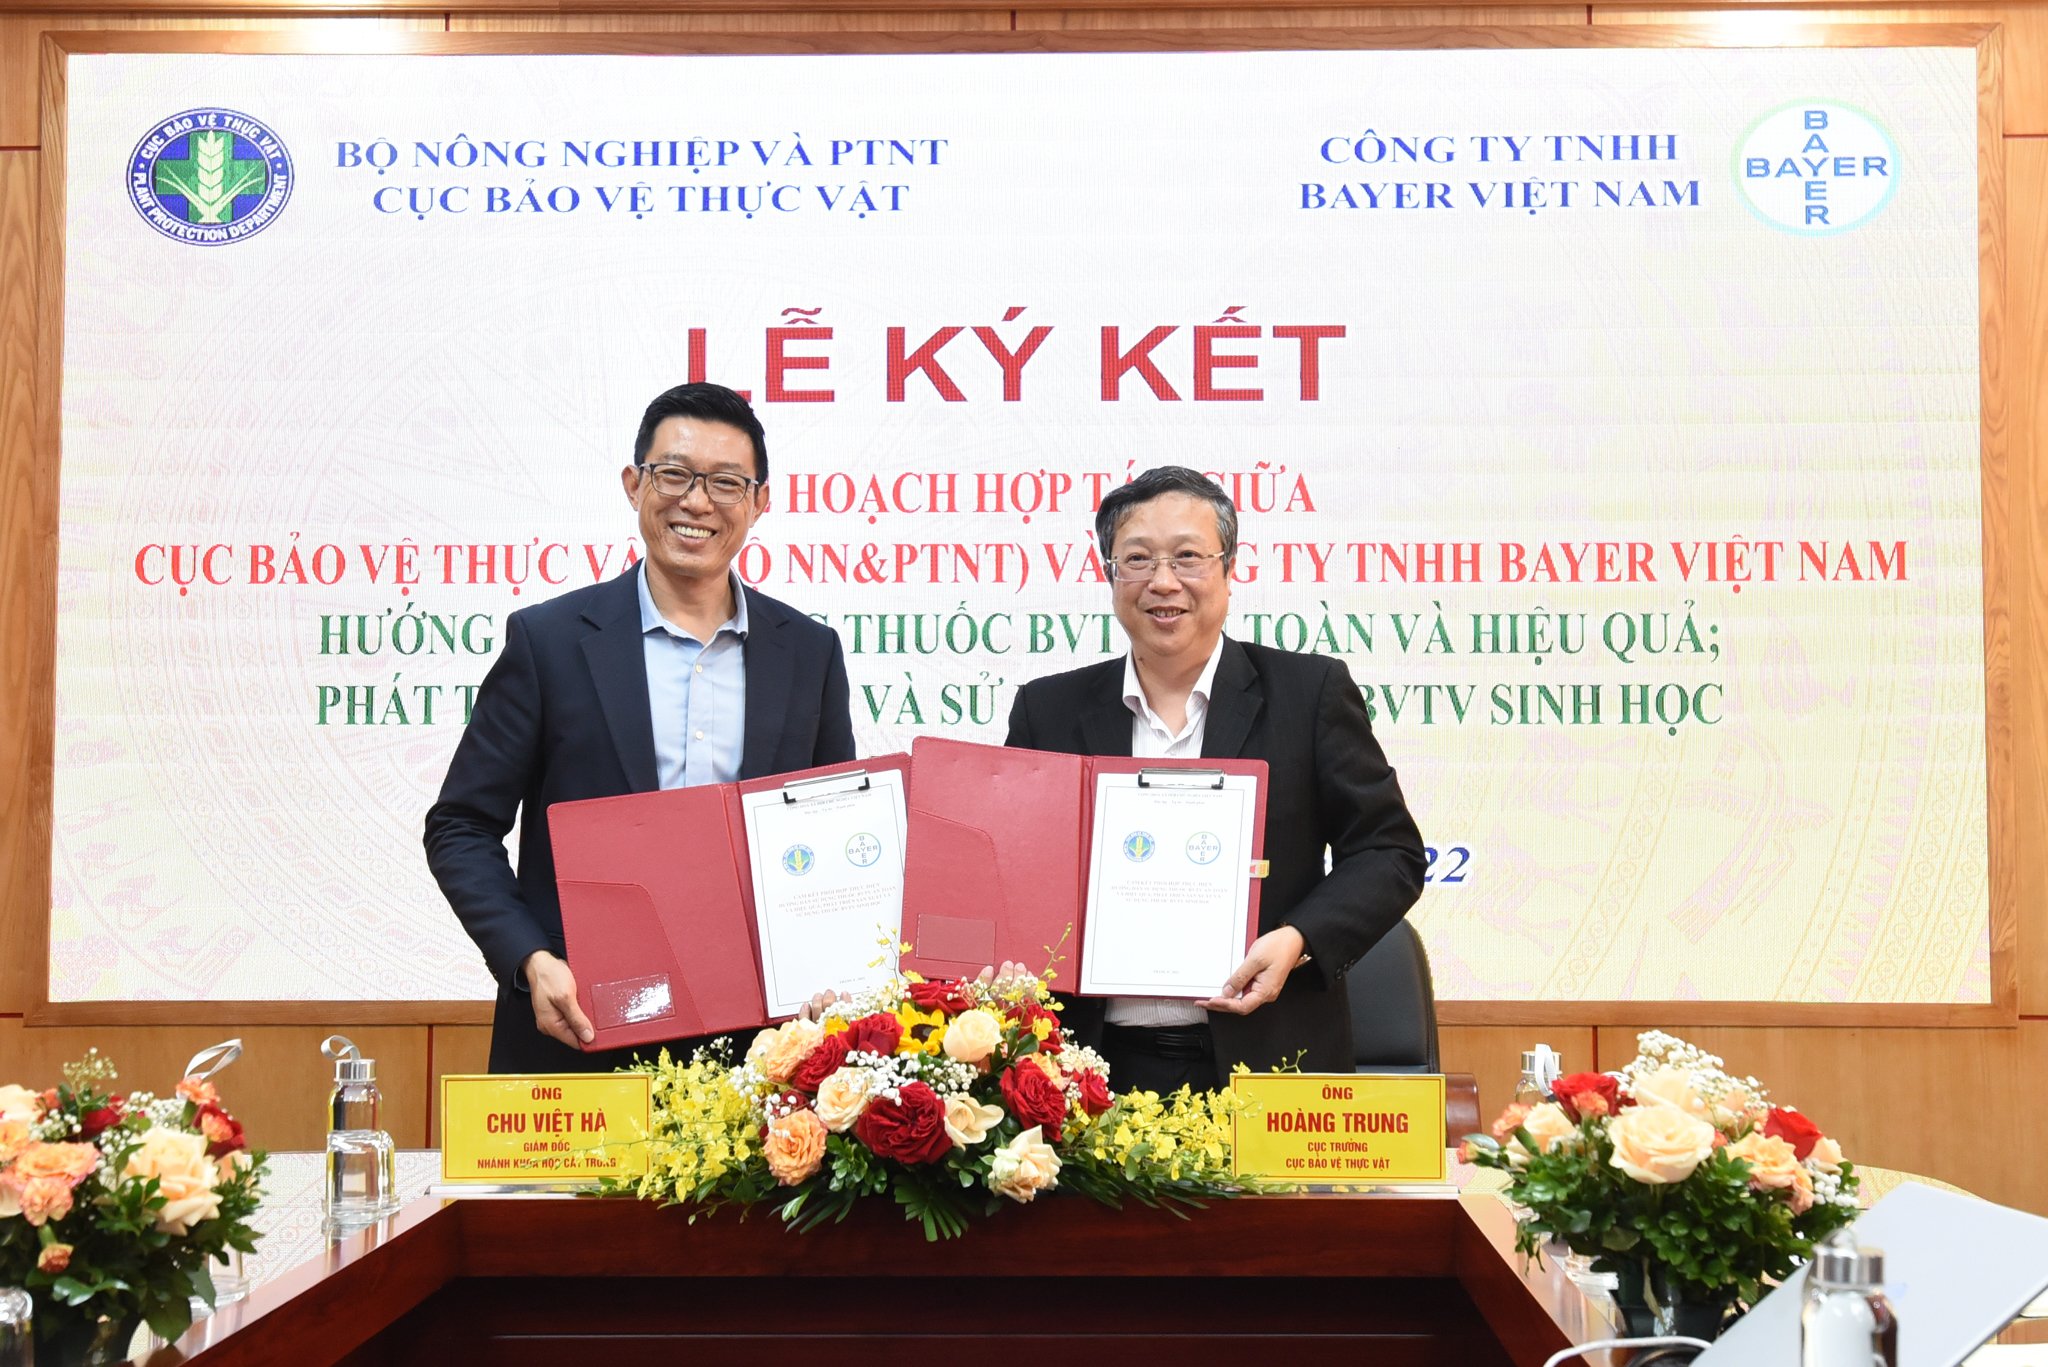 Ông Hoàng Trung (phải) - Cục trưởng Cục BVTV và ông Chu Việt Hà - Giám đốc nhánh Khoa học cây trồng (Bayer Việt Nam) ký kết biên bản hợp tác. Ảnh: Tùng Đinh.